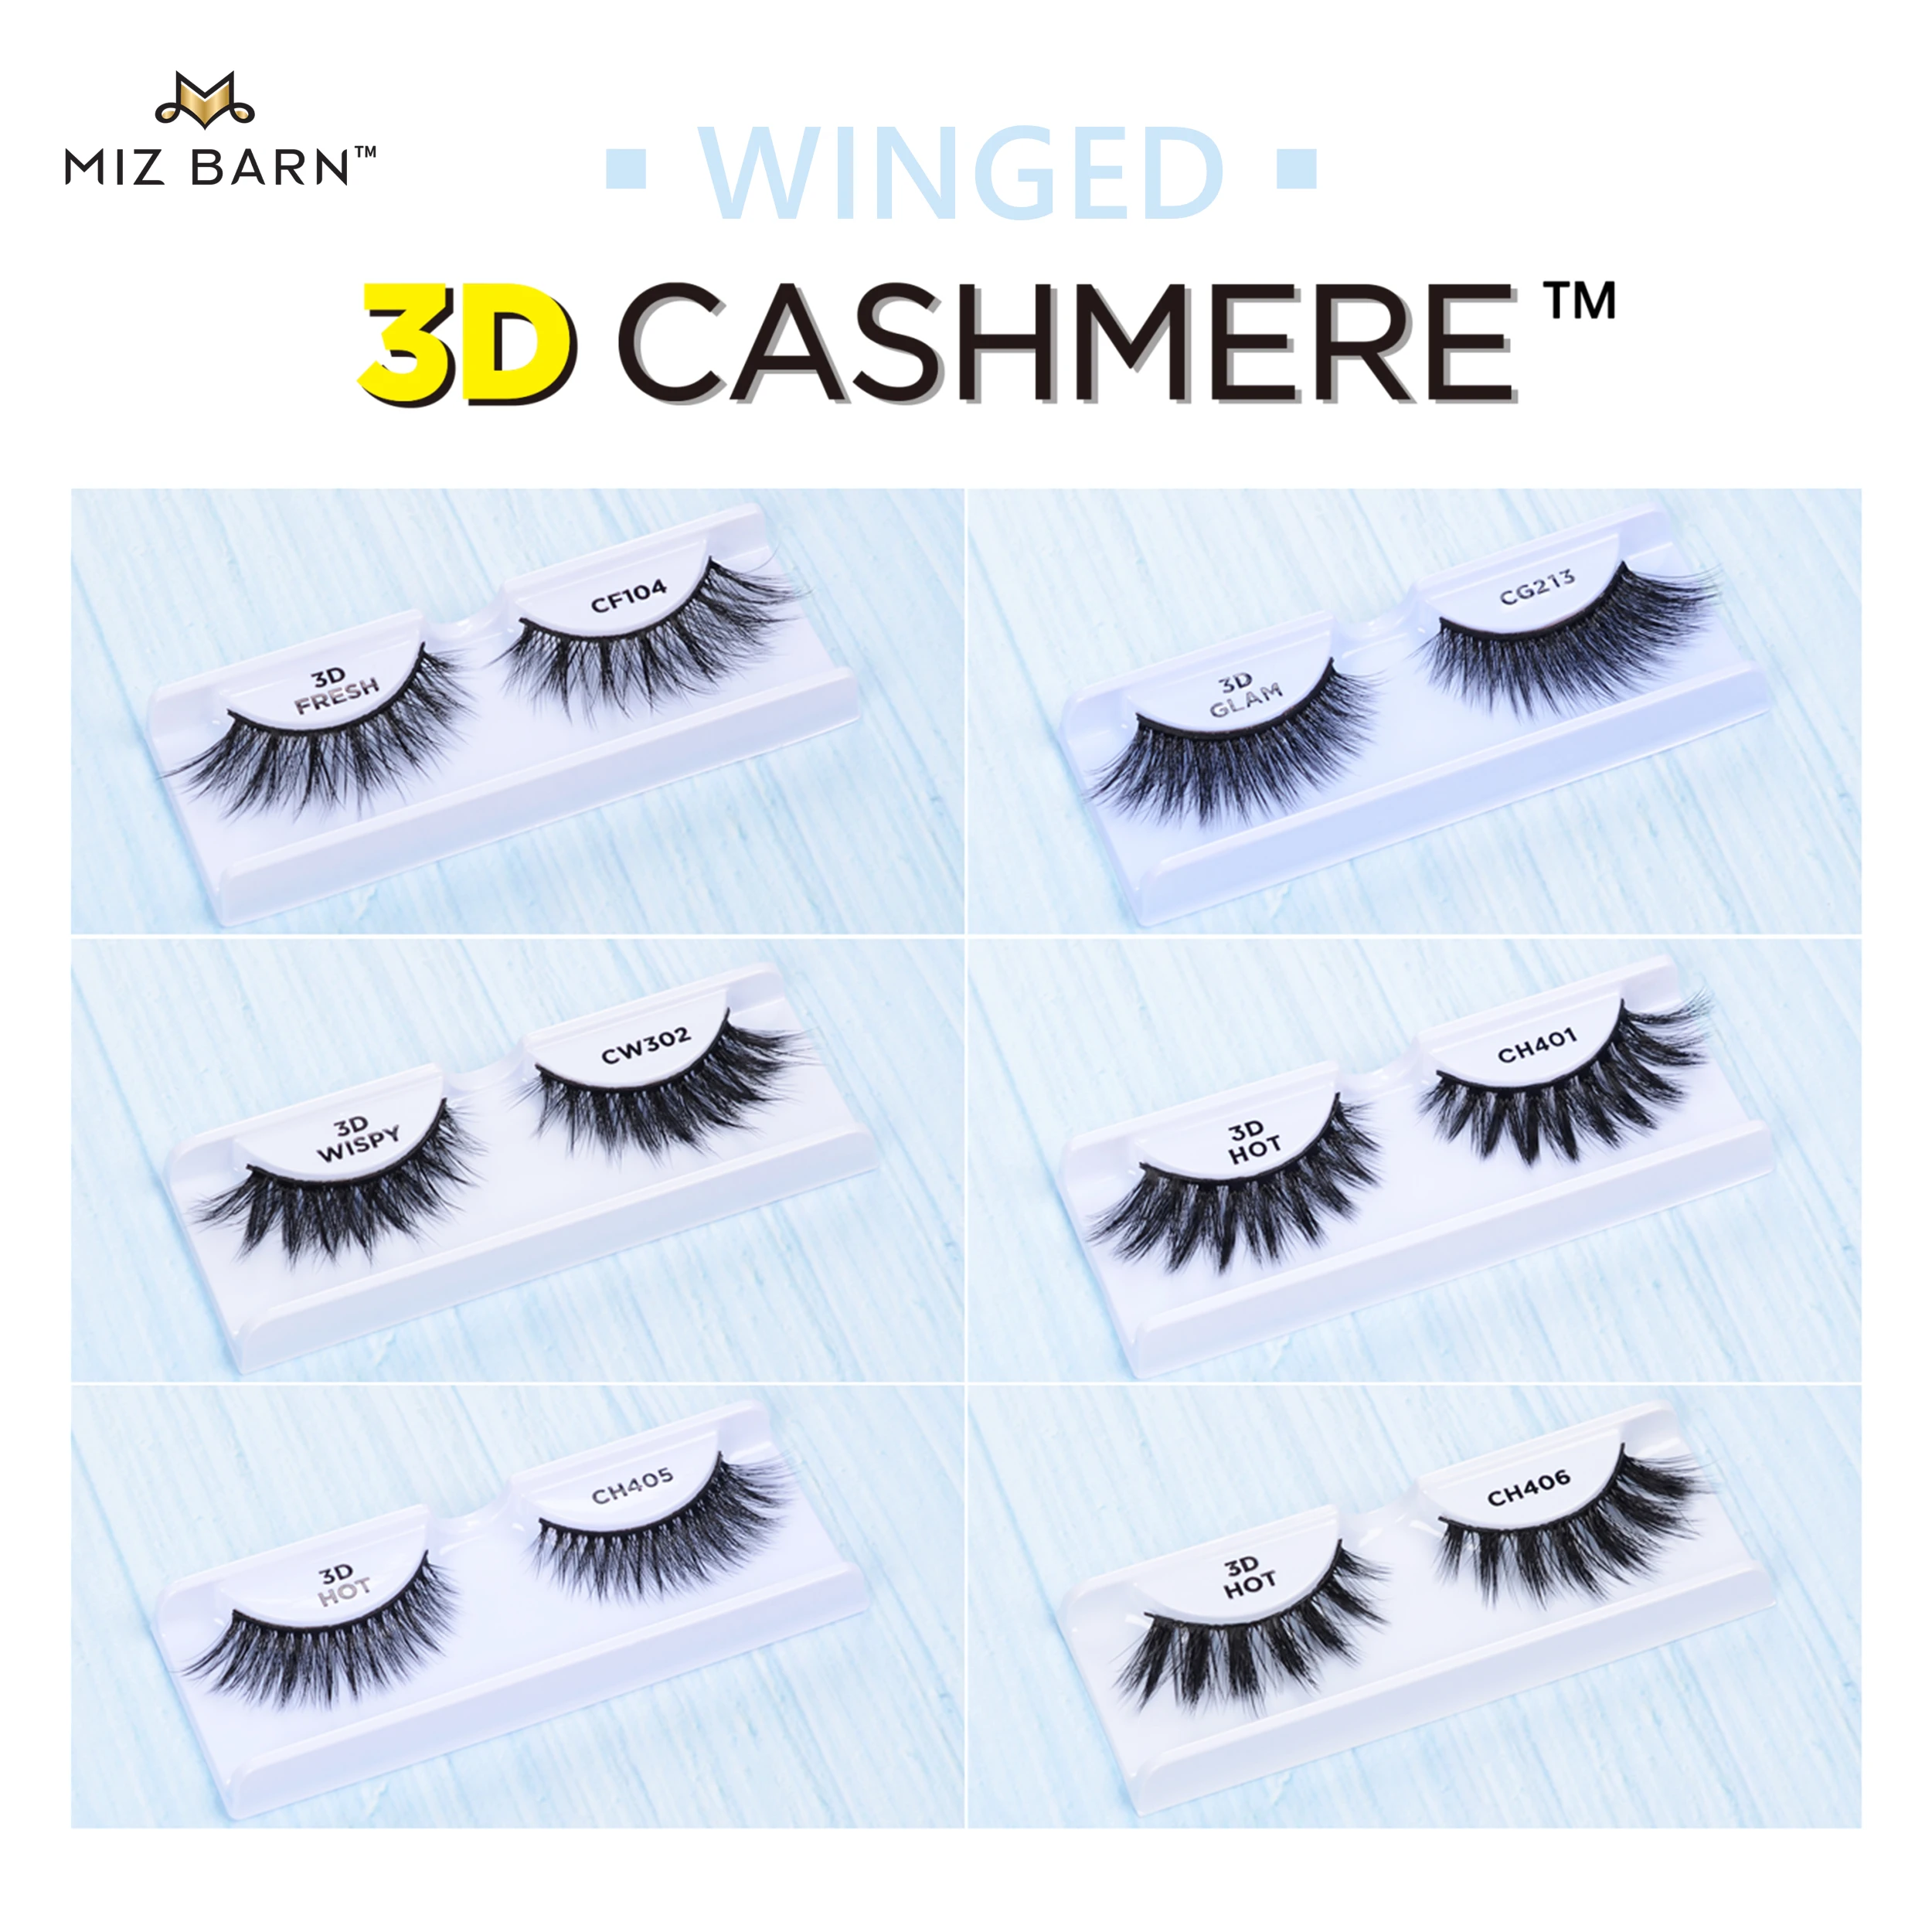 

MIZ BARN Winged 3D CASHMERE False Eyelashes Natural Soft Reusable Makeup Eyes Lashes Fluffy Long Wispy Eyelash Handmade Faux Cil